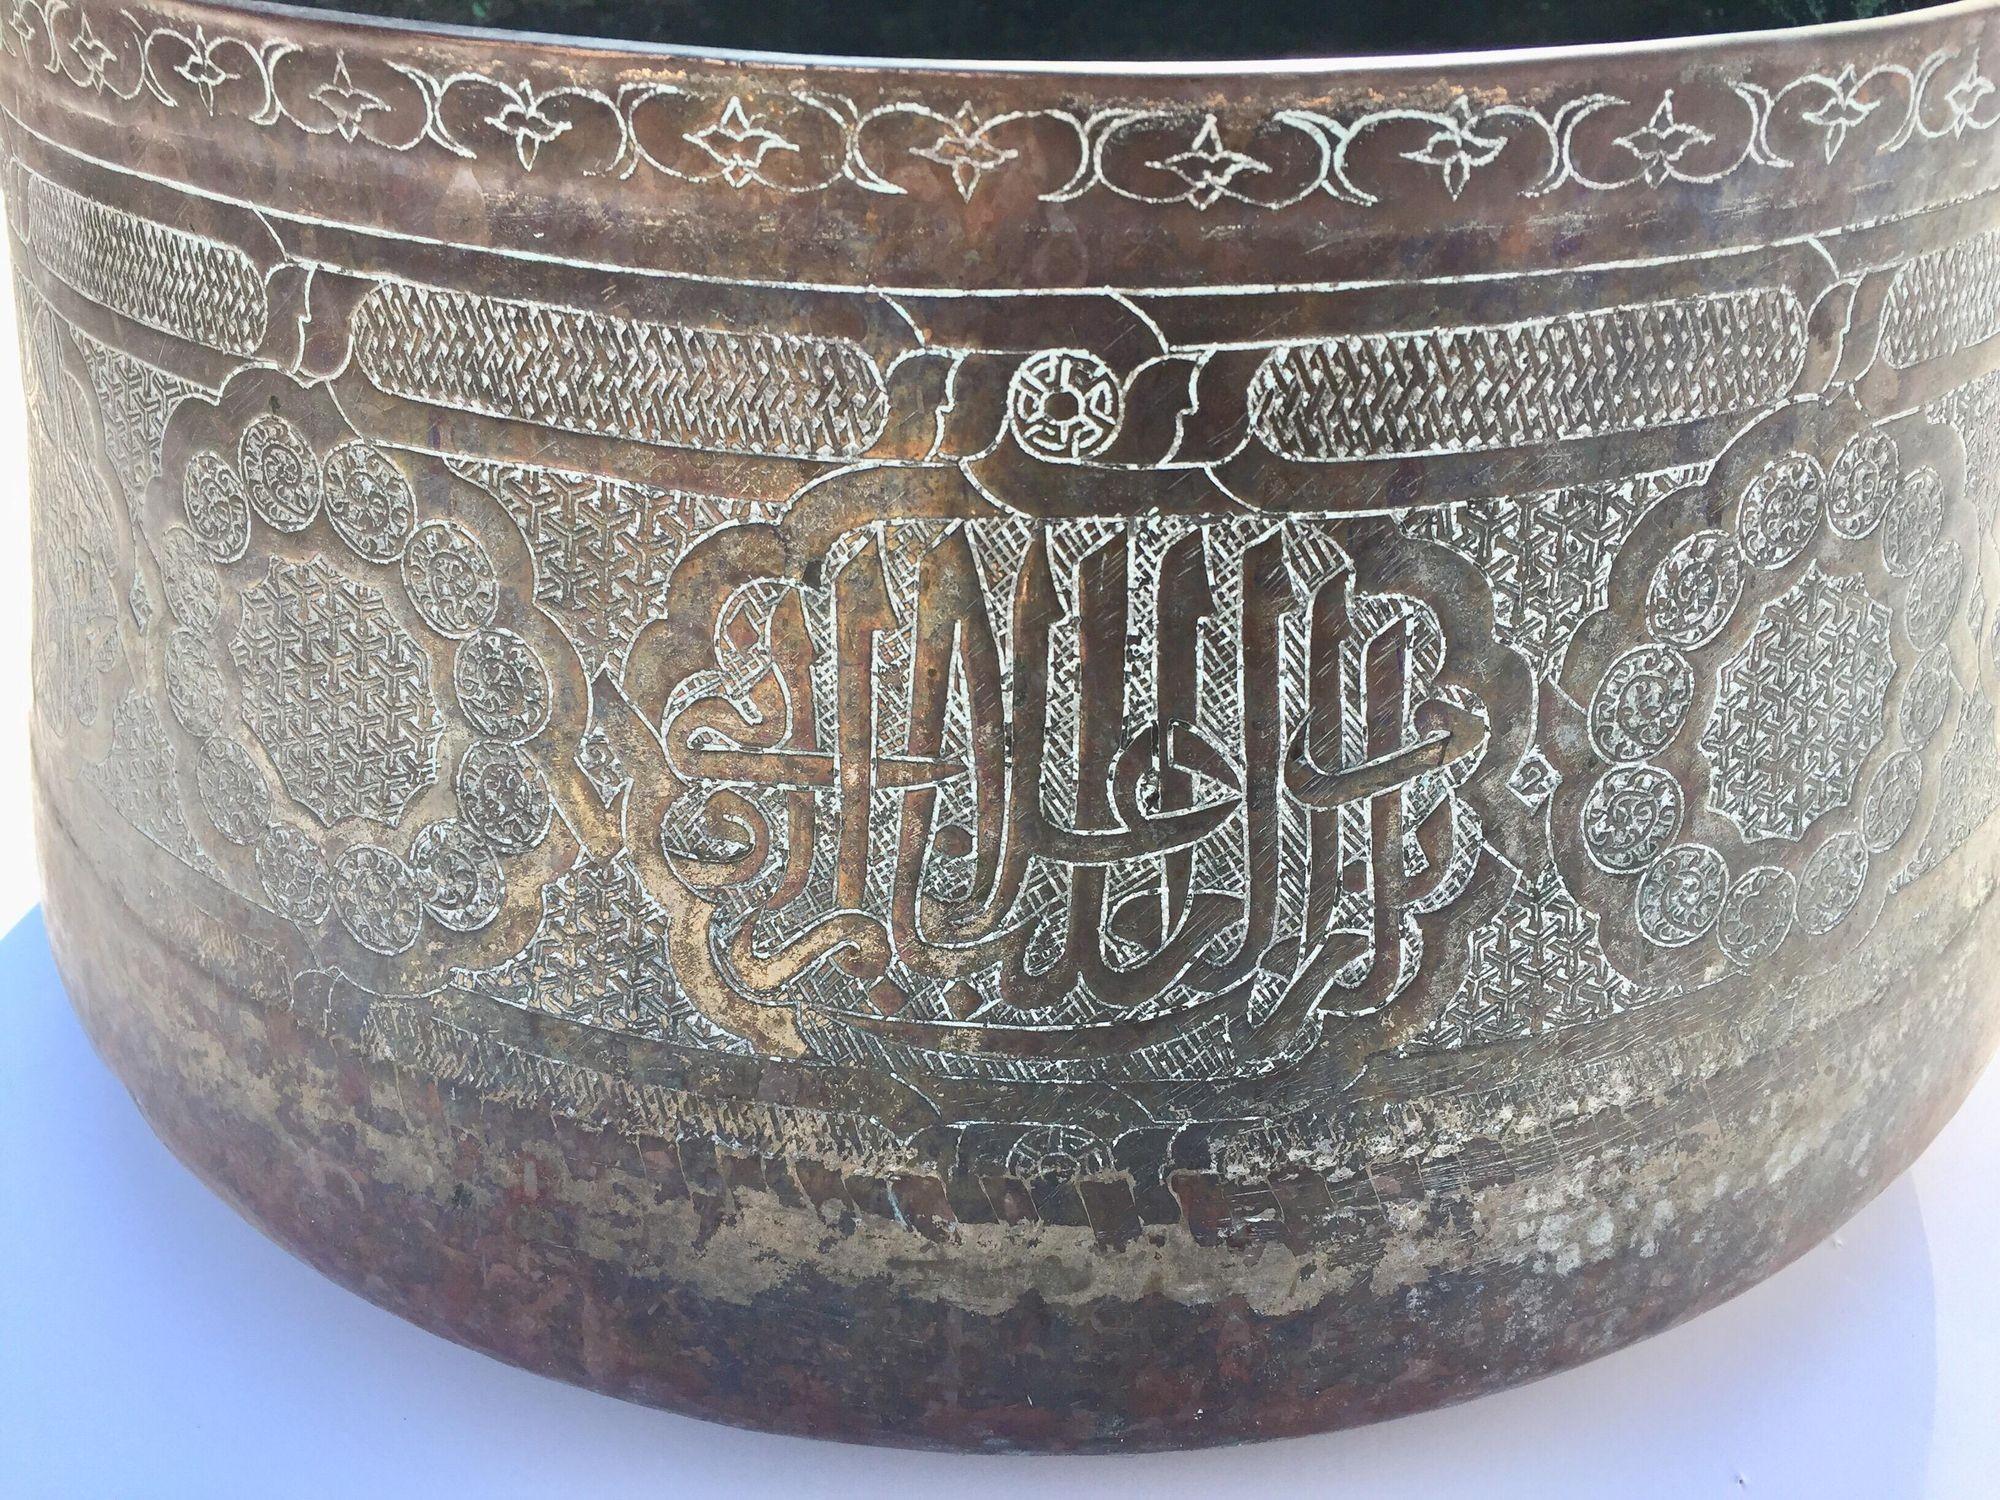 Grande coupe mauresque islamique du 19e siècle en cuivre gravé à la main, de 17 pouces de diamètre, pouvant être utilisée comme jardinière pour une grande composition d'orchidées.Avec une base arrondie et des côtés inversés inclinés menant à un bord